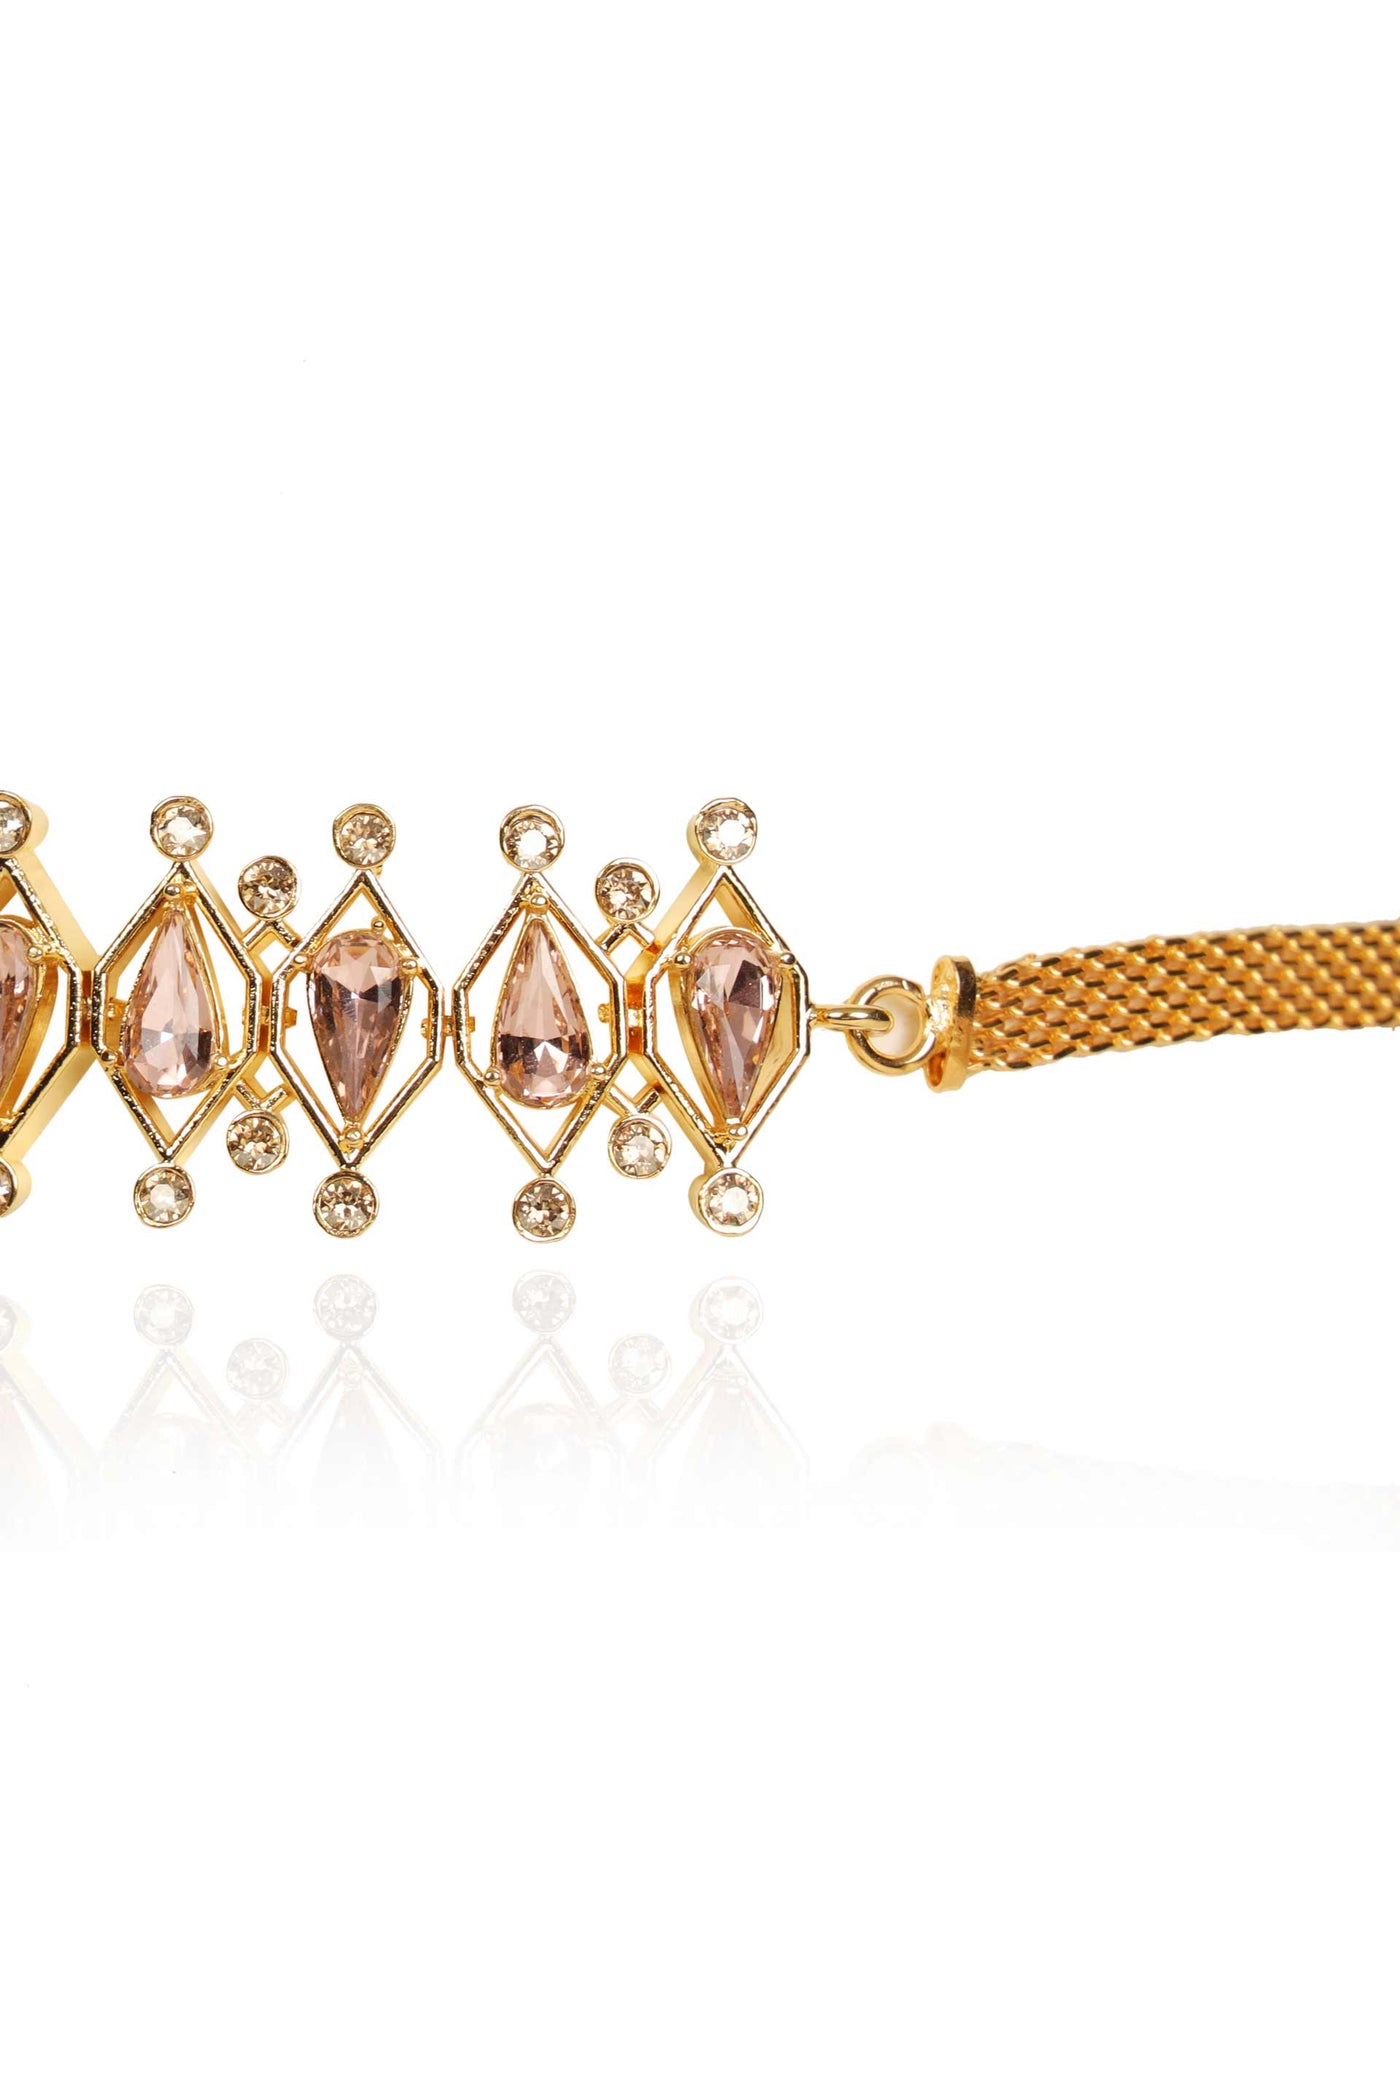 esme lambada choker pink in yellow gold fashion jewellery indian designer wear online shopping melange singapore